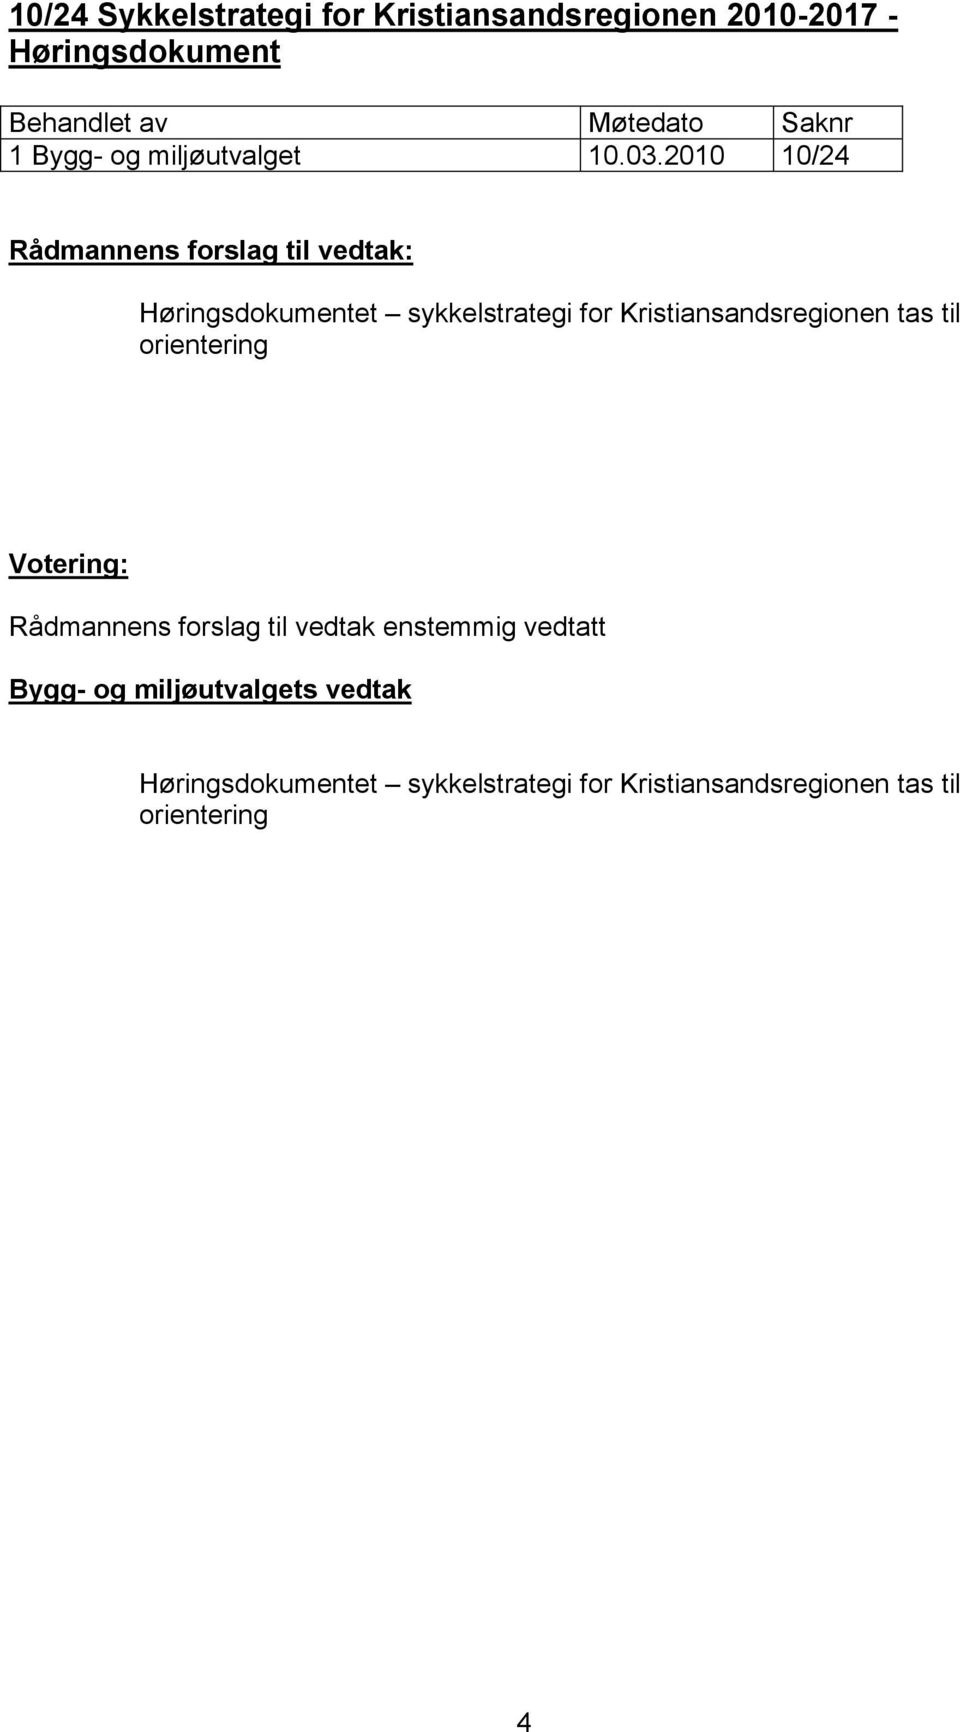 2010 10/24 Høringsdokumentet sykkelstrategi for Kristiansandsregionen tas til